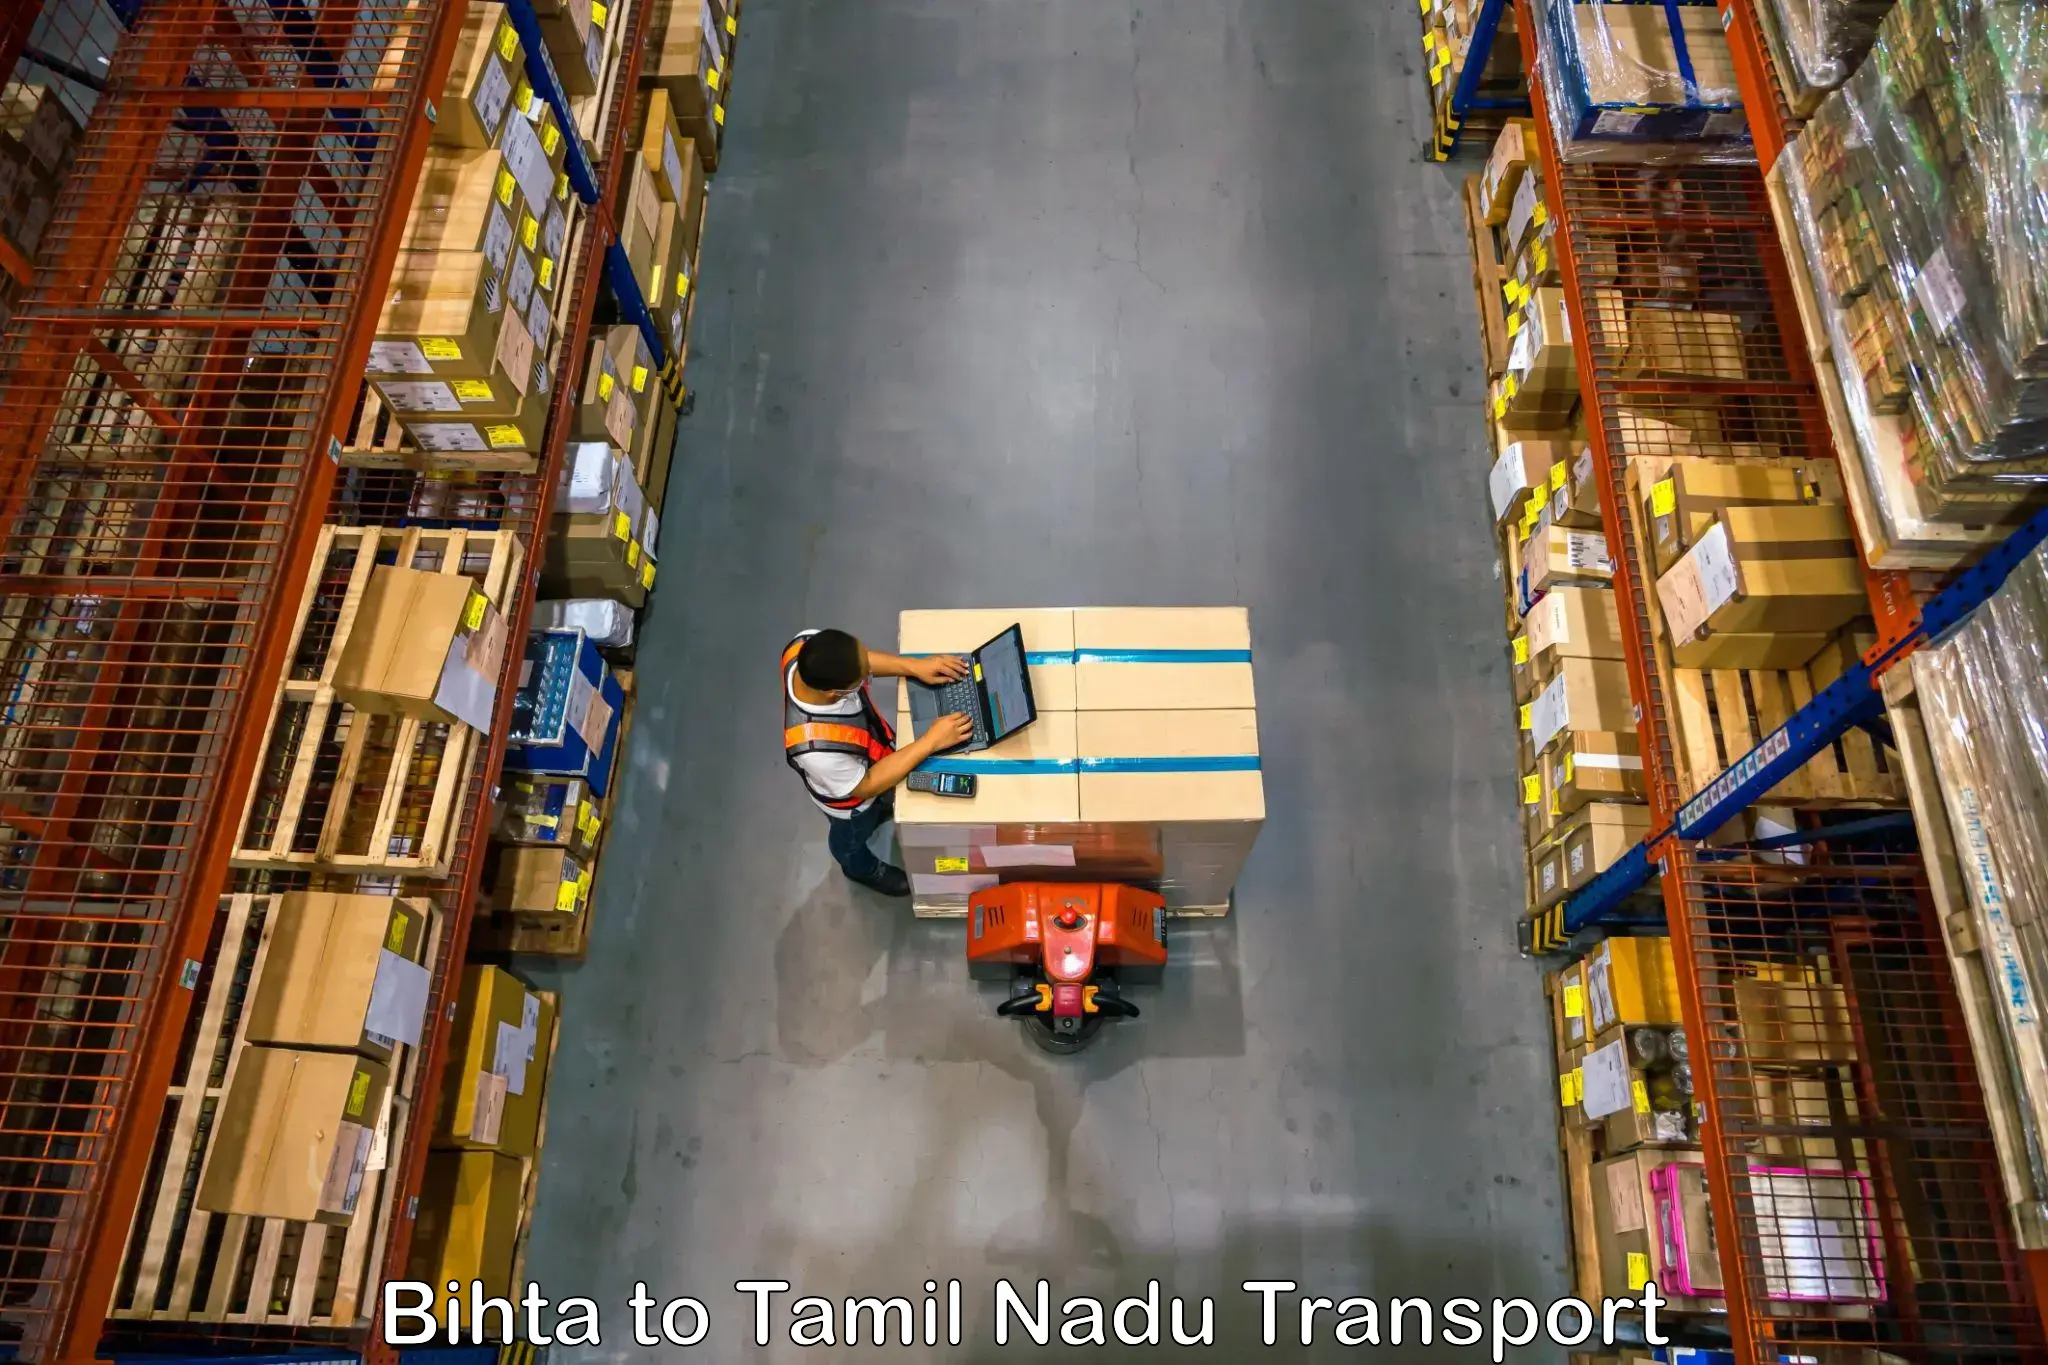 Intercity goods transport Bihta to Suramangalam